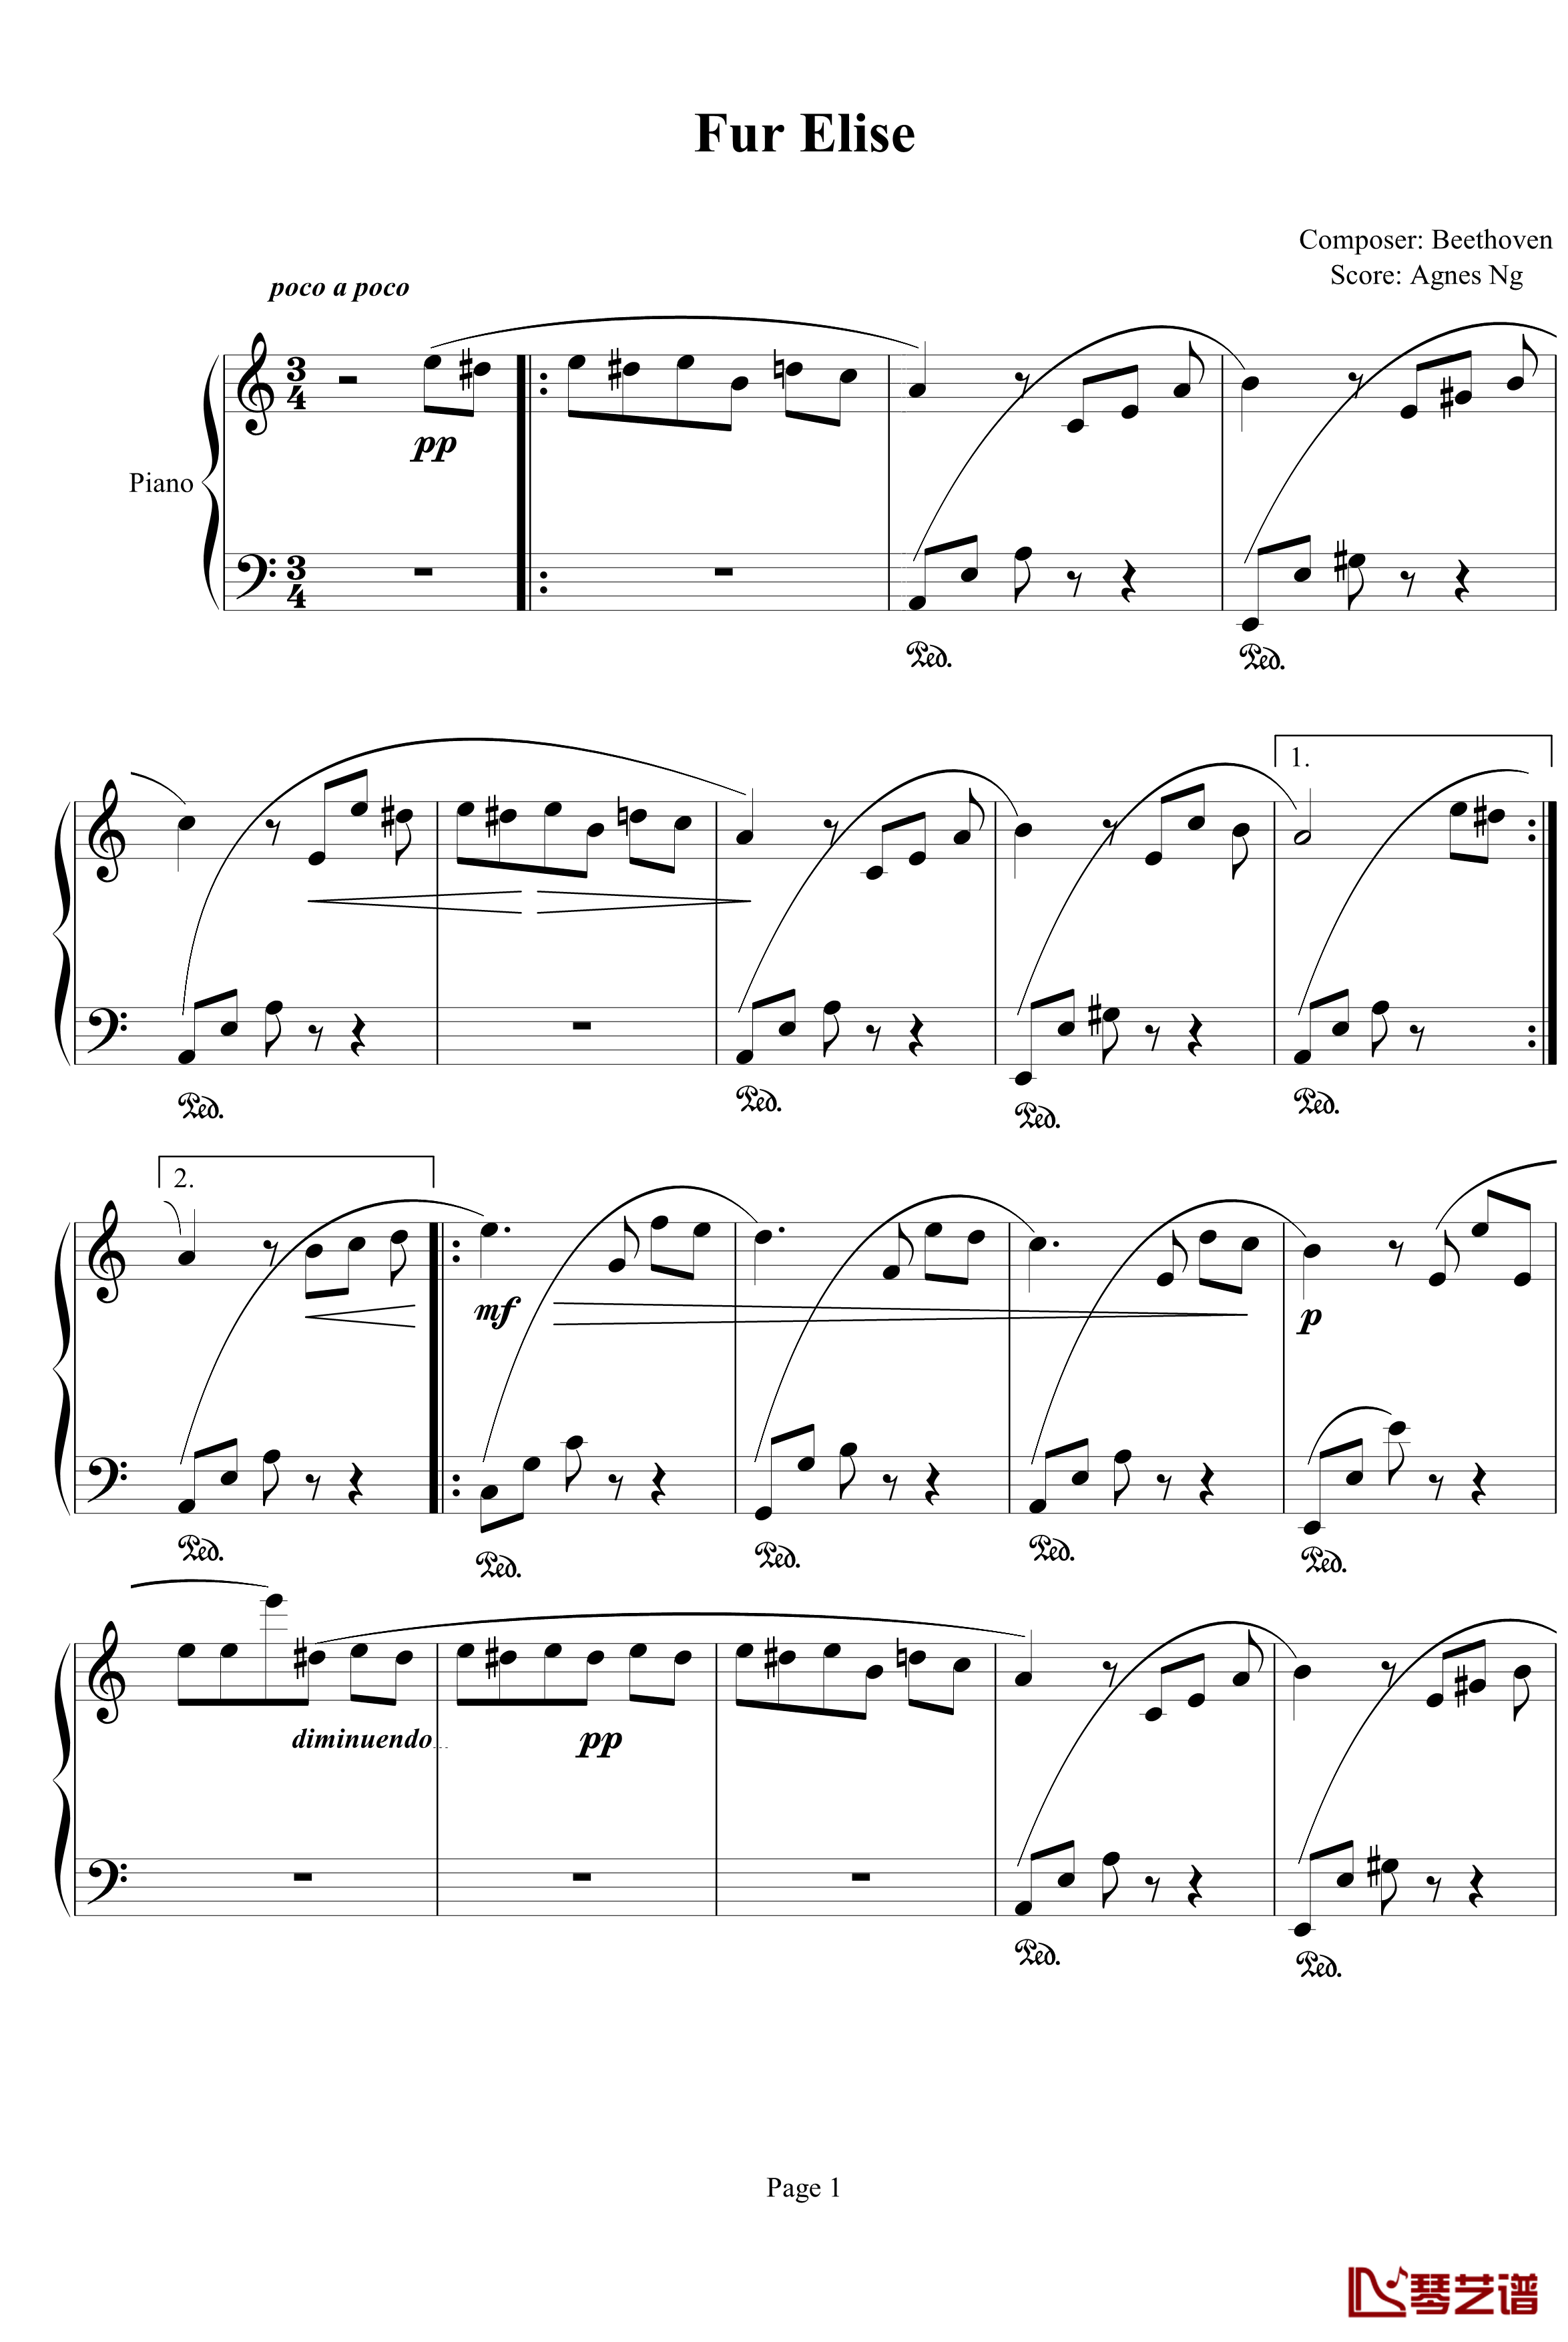 Fur Elise钢琴谱-agnesng版-贝多芬-beethoven1